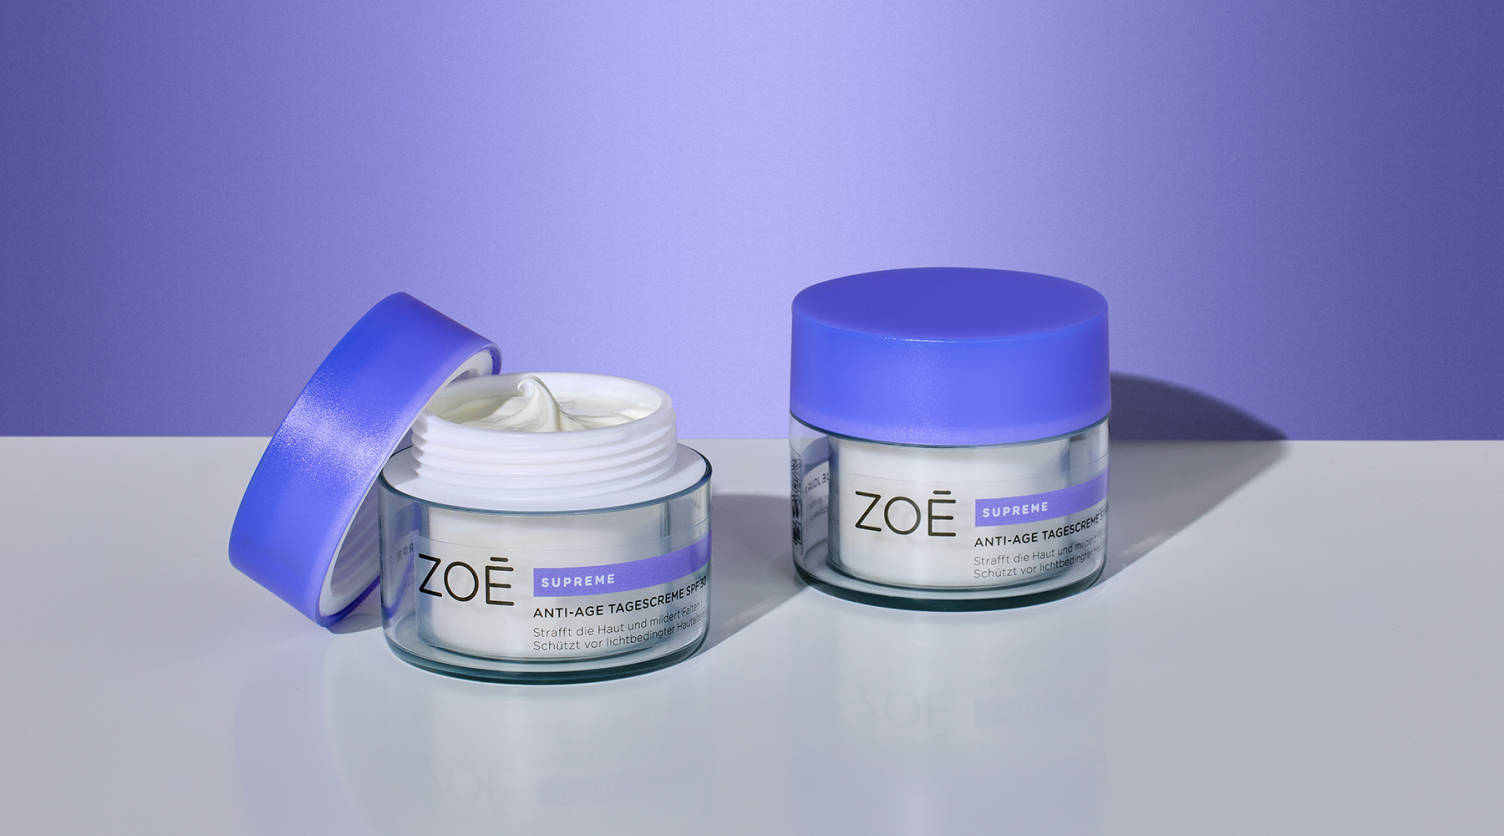 Produktbild zweier Gesichtscremes der Marke Zoé